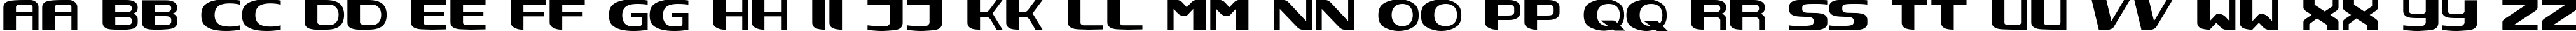 Пример написания английского алфавита шрифтом NEC